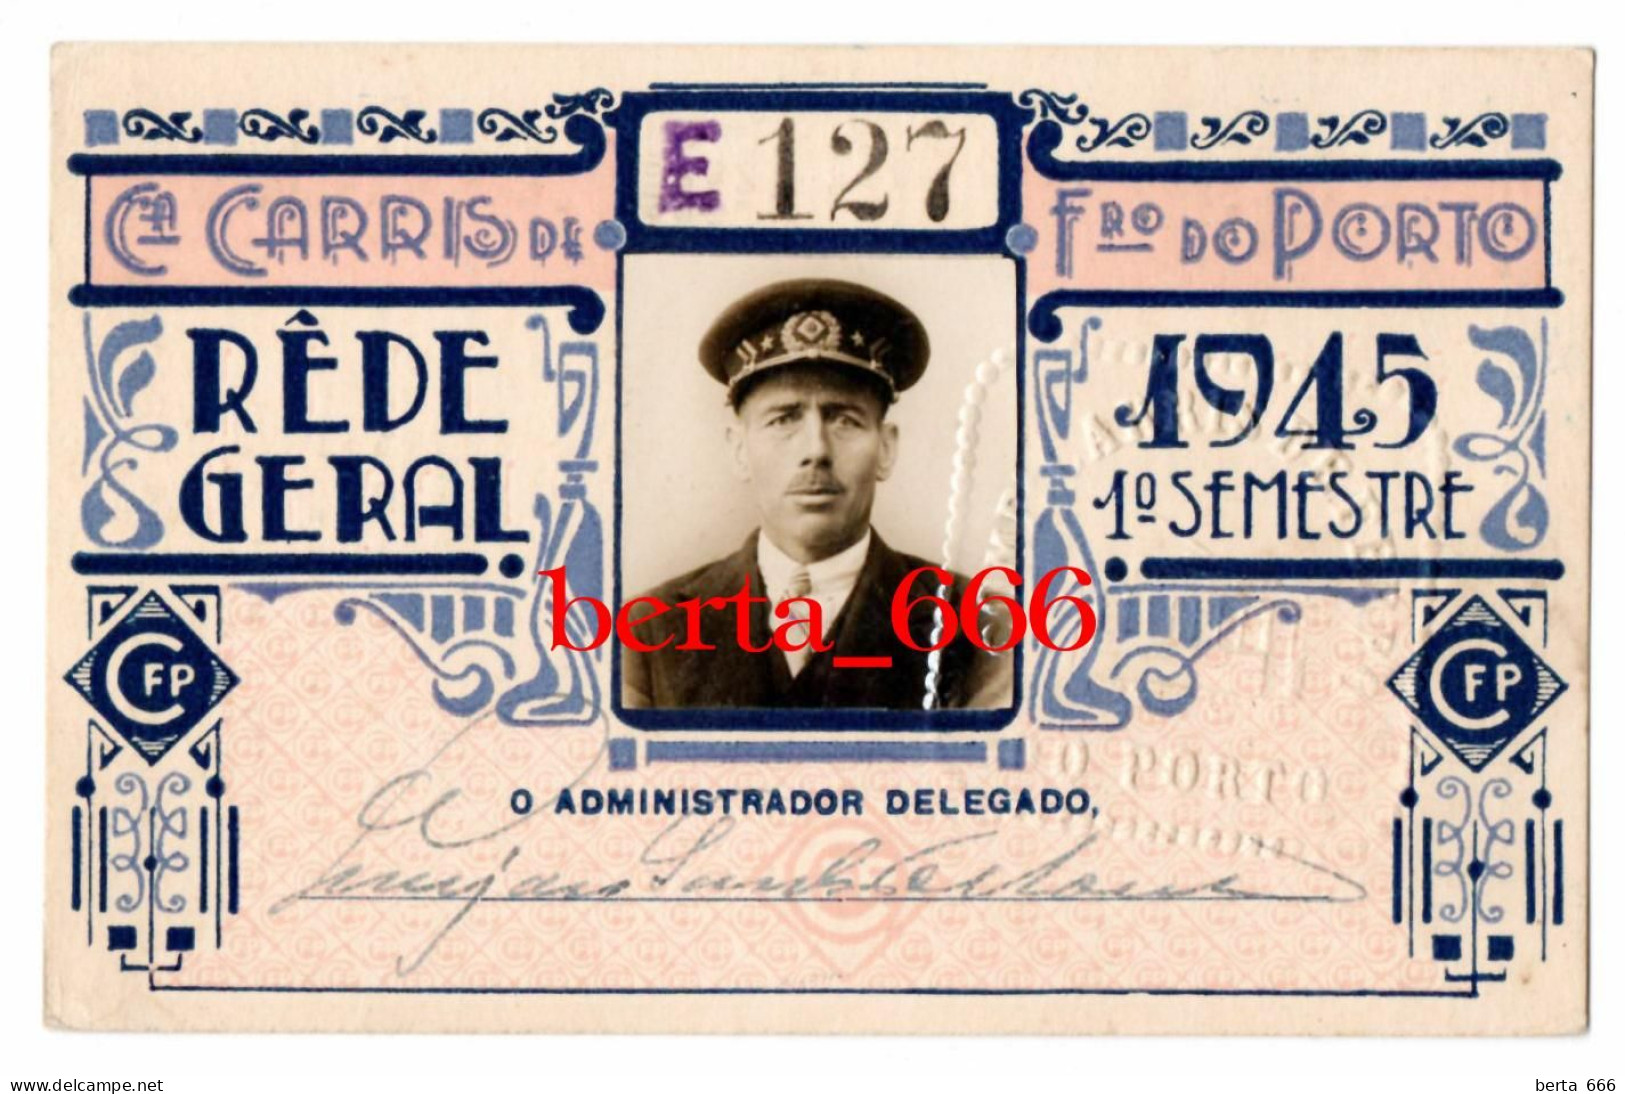 Passe Rede Geral Empregado * Companhia Carris De Ferro Do Porto * 1945 * 1º Semestre * Portugal Tramway Season Ticket - Europa